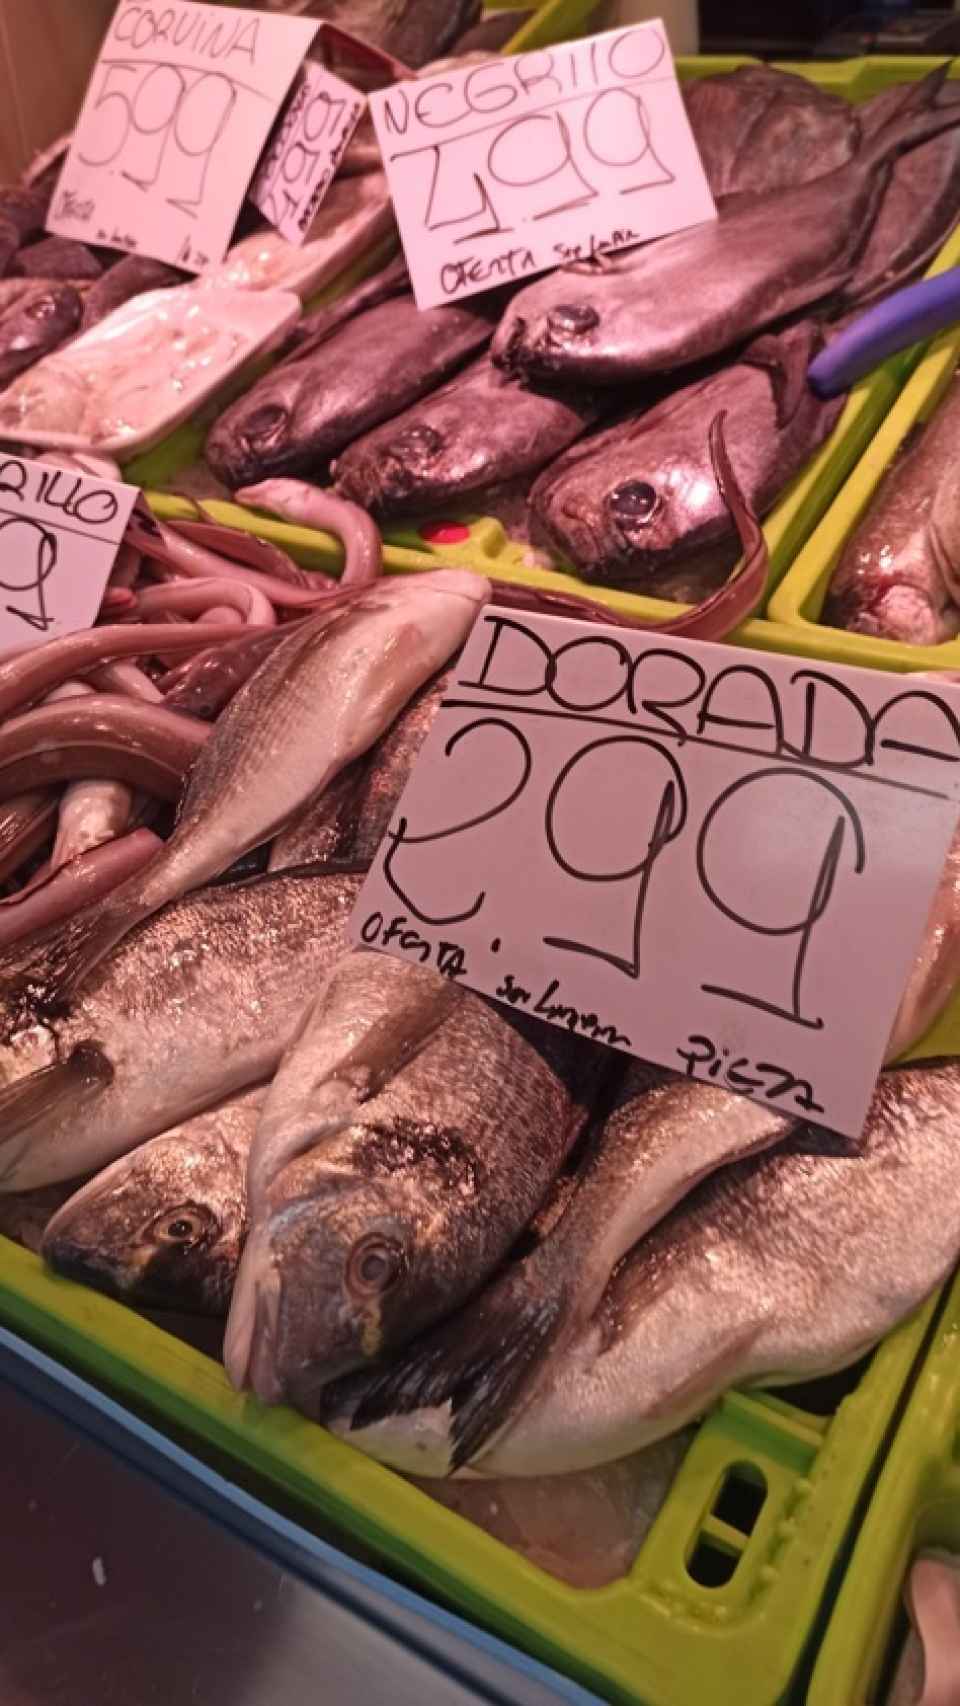 La dorada nacional es otro de los pescados económicos cuyos precios varían dependiendo del puesto al que se acuda.